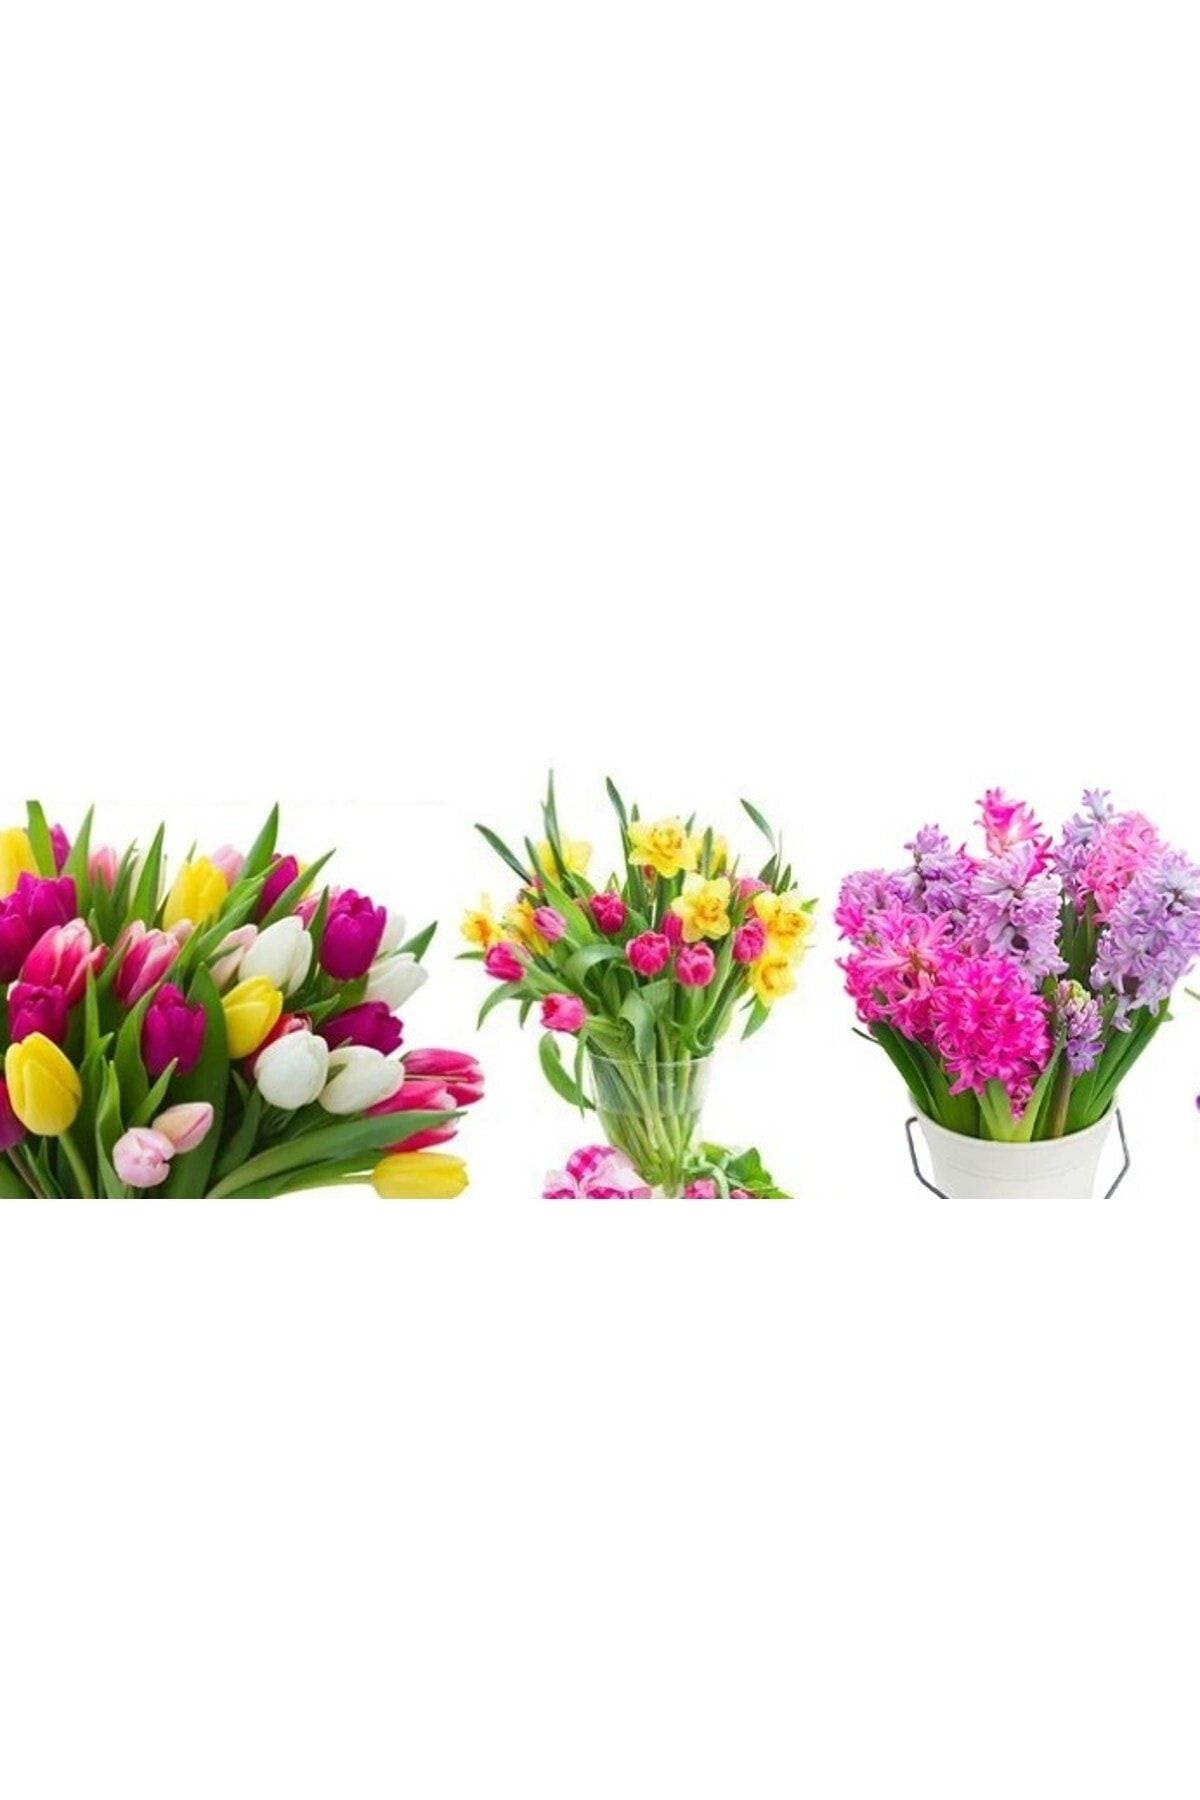 Vipfoni Karışık Çiçek Soğanları (nergis Sümbül,lale,iris) 5 Adet